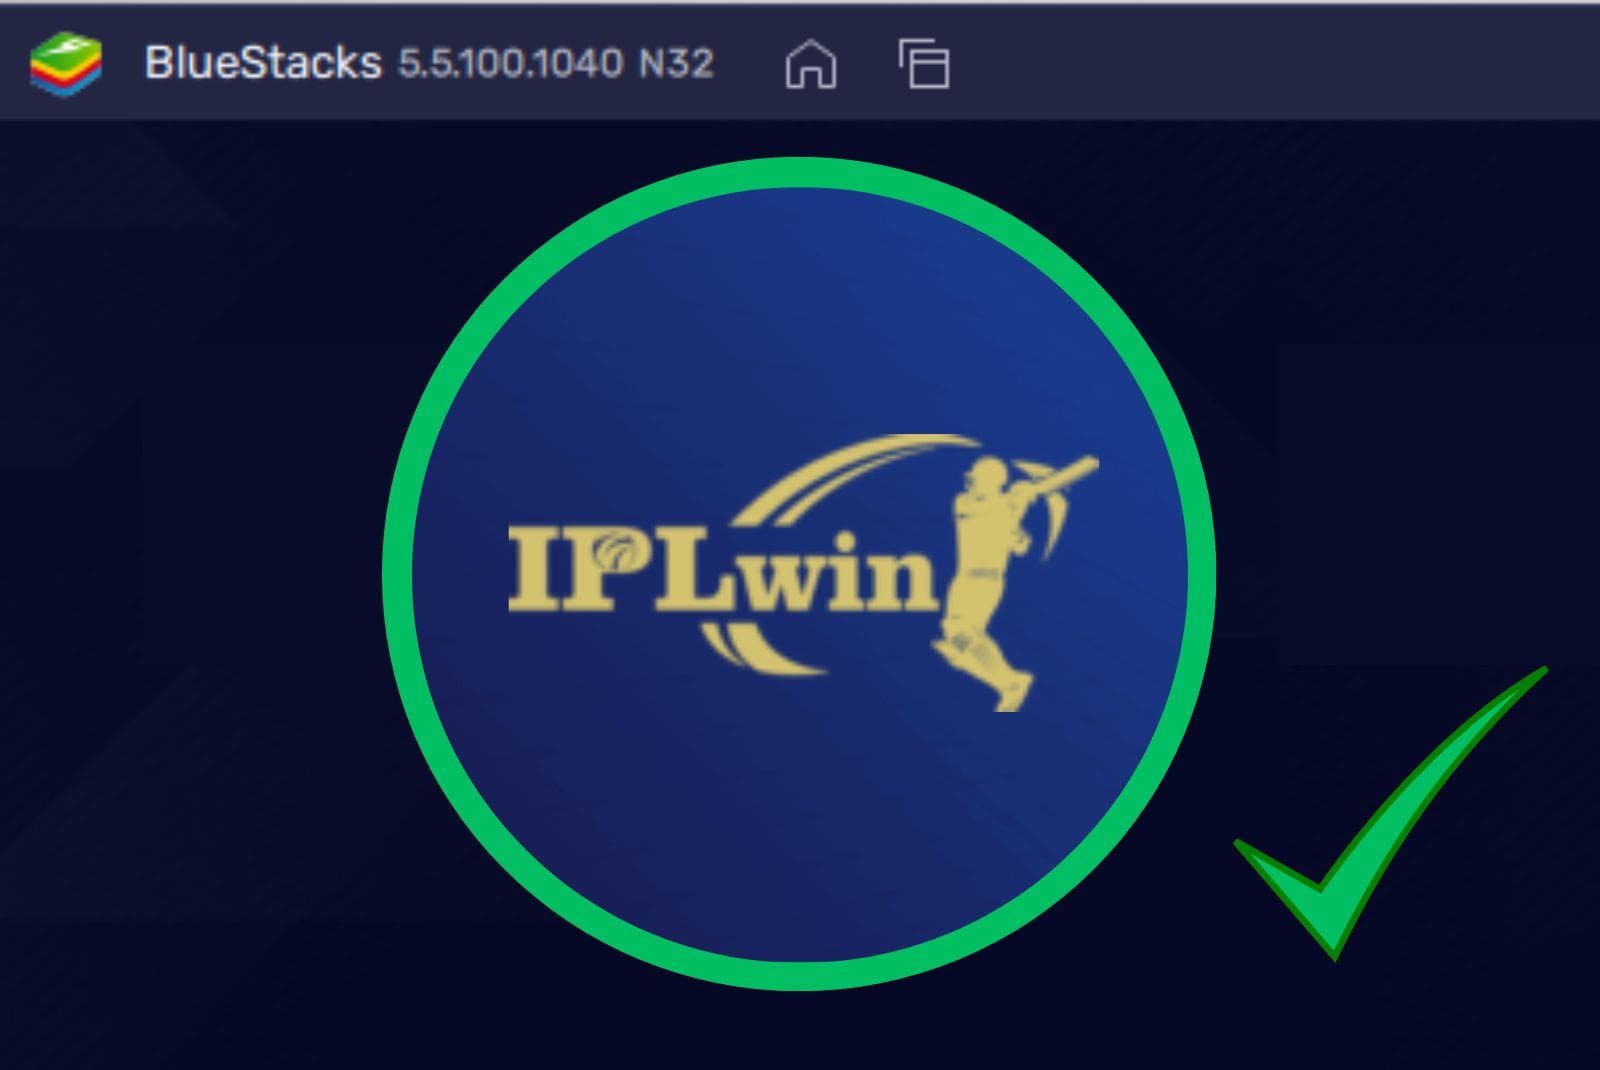 Iplwin India app in bluestacks program step